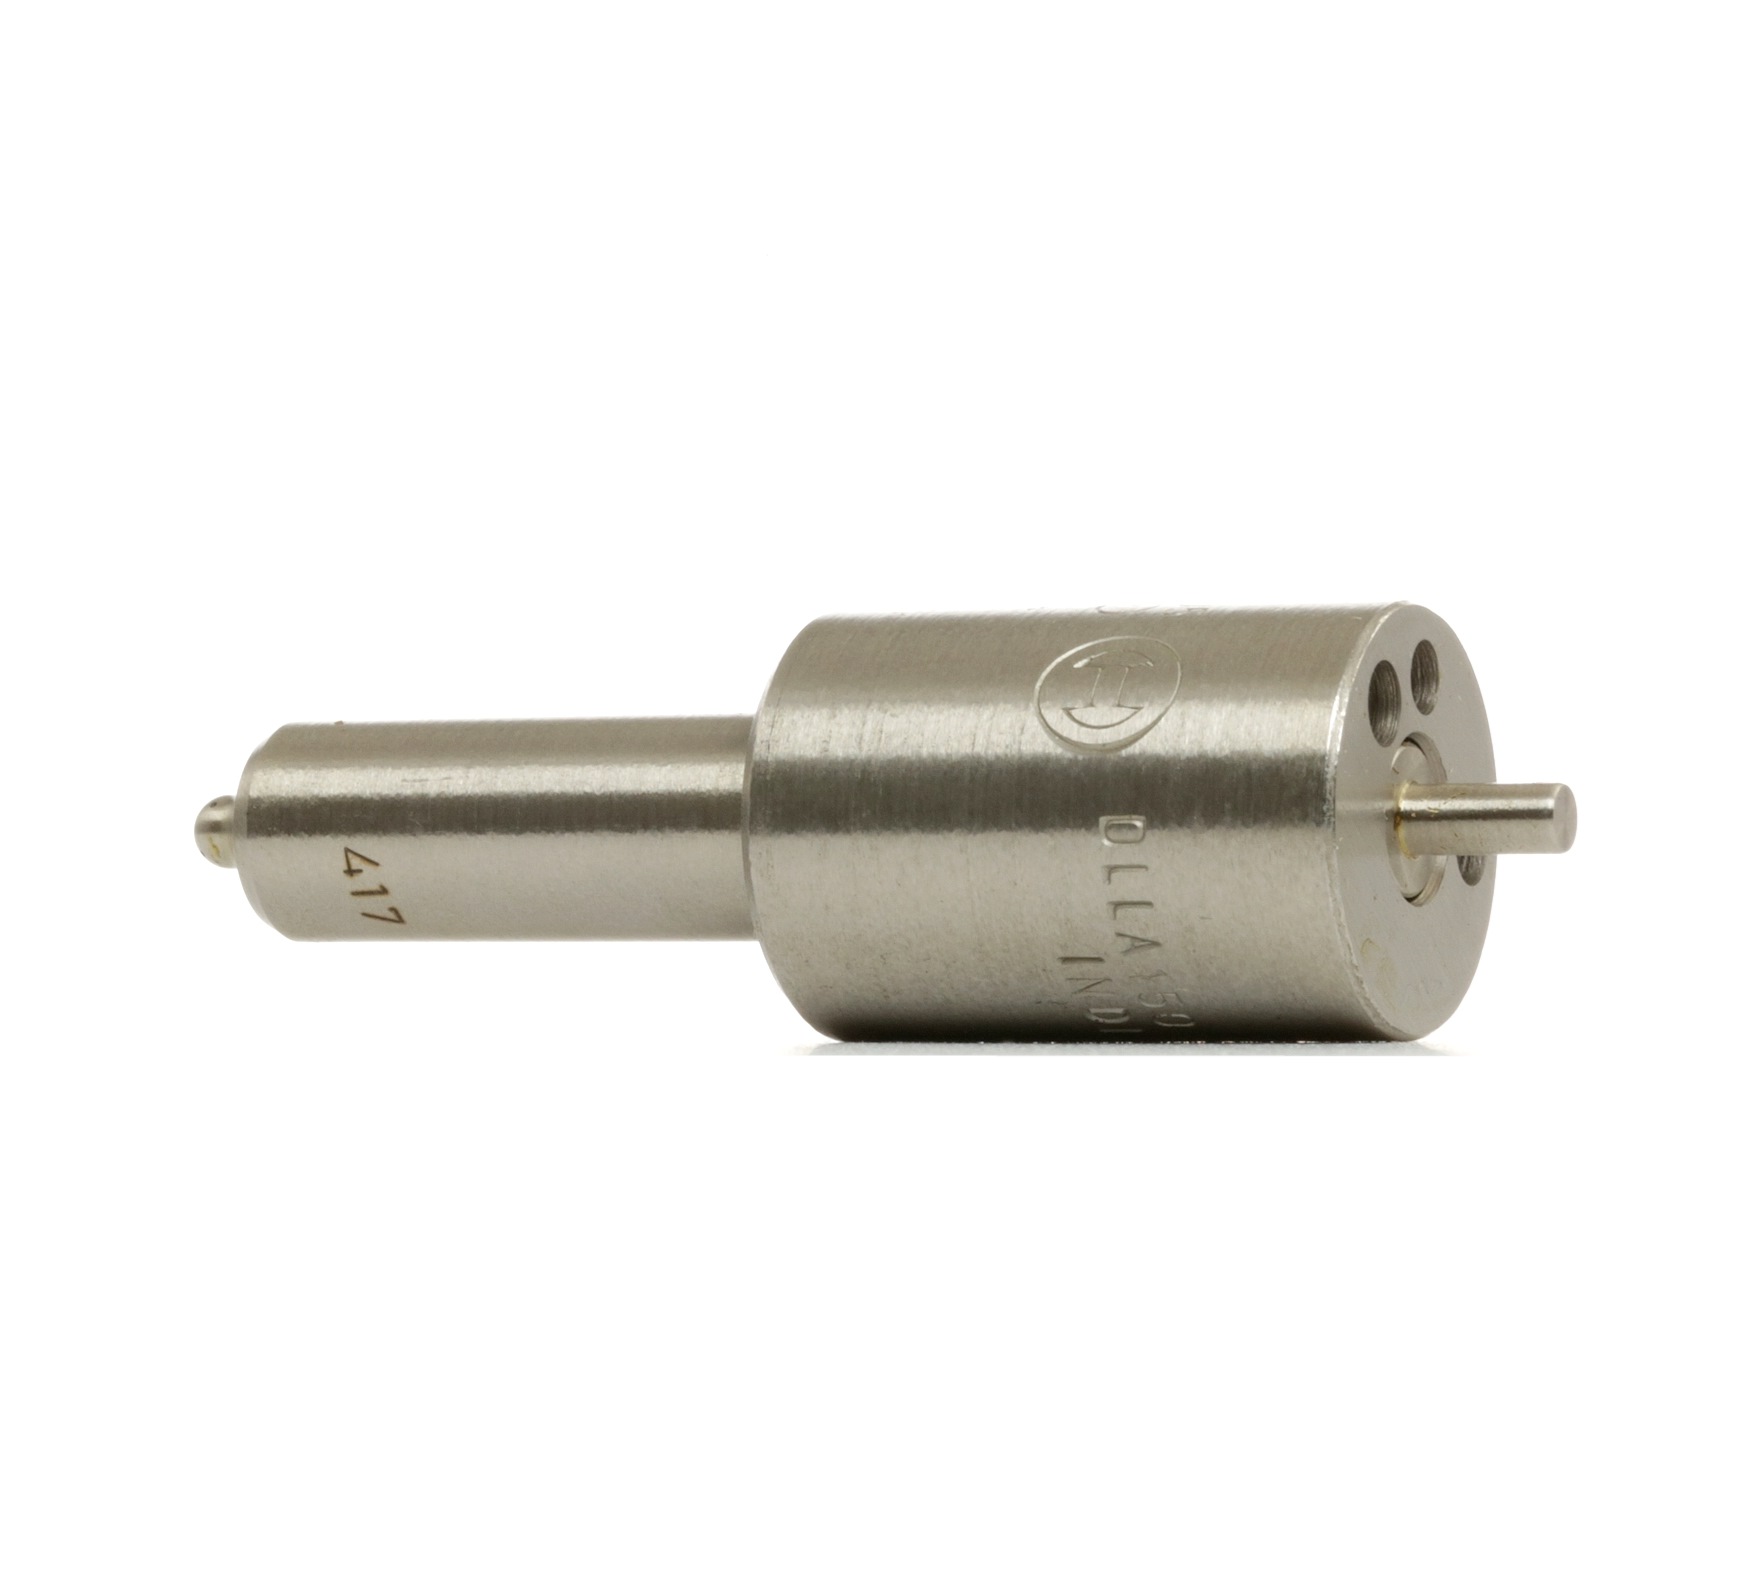 DLLA 150 S 417 BOSCH Diesel, Sac-hole Nozzle Fuel injector nozzle 0 433 271 180 buy